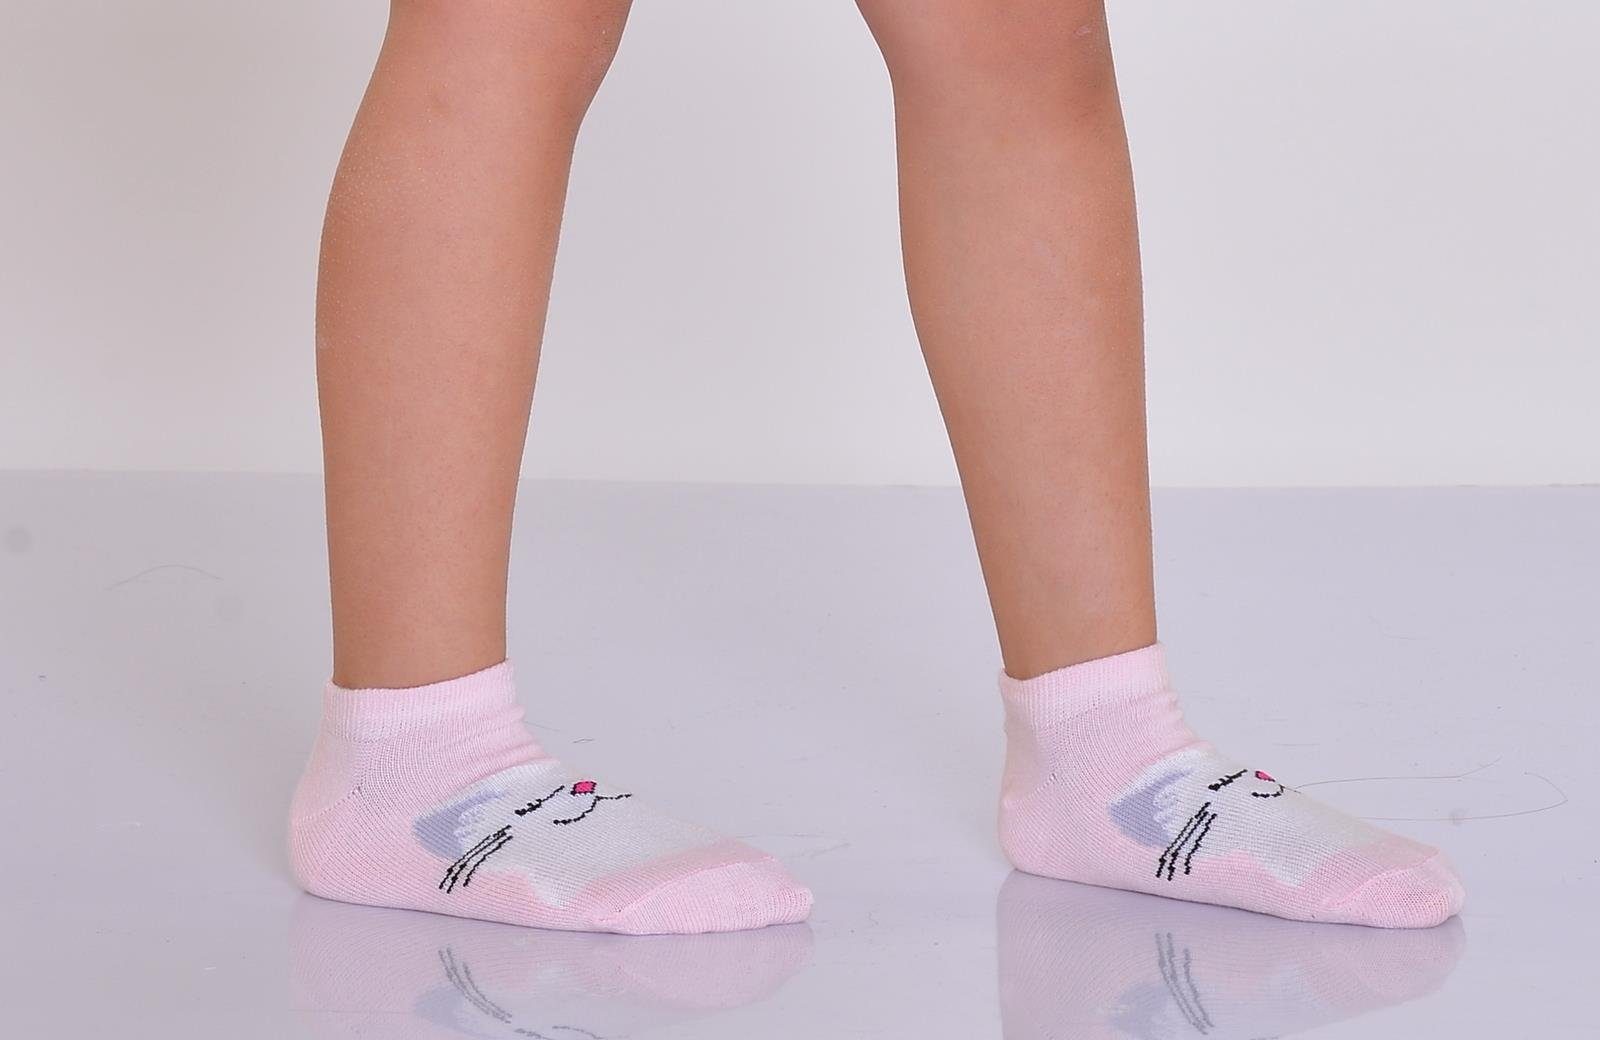 Modell Paar 12 LOREZA Kurzsocken 12-Paar Socken Sneakersocken (Paar, Mädchen 12-Paar) 4 Kindersocken